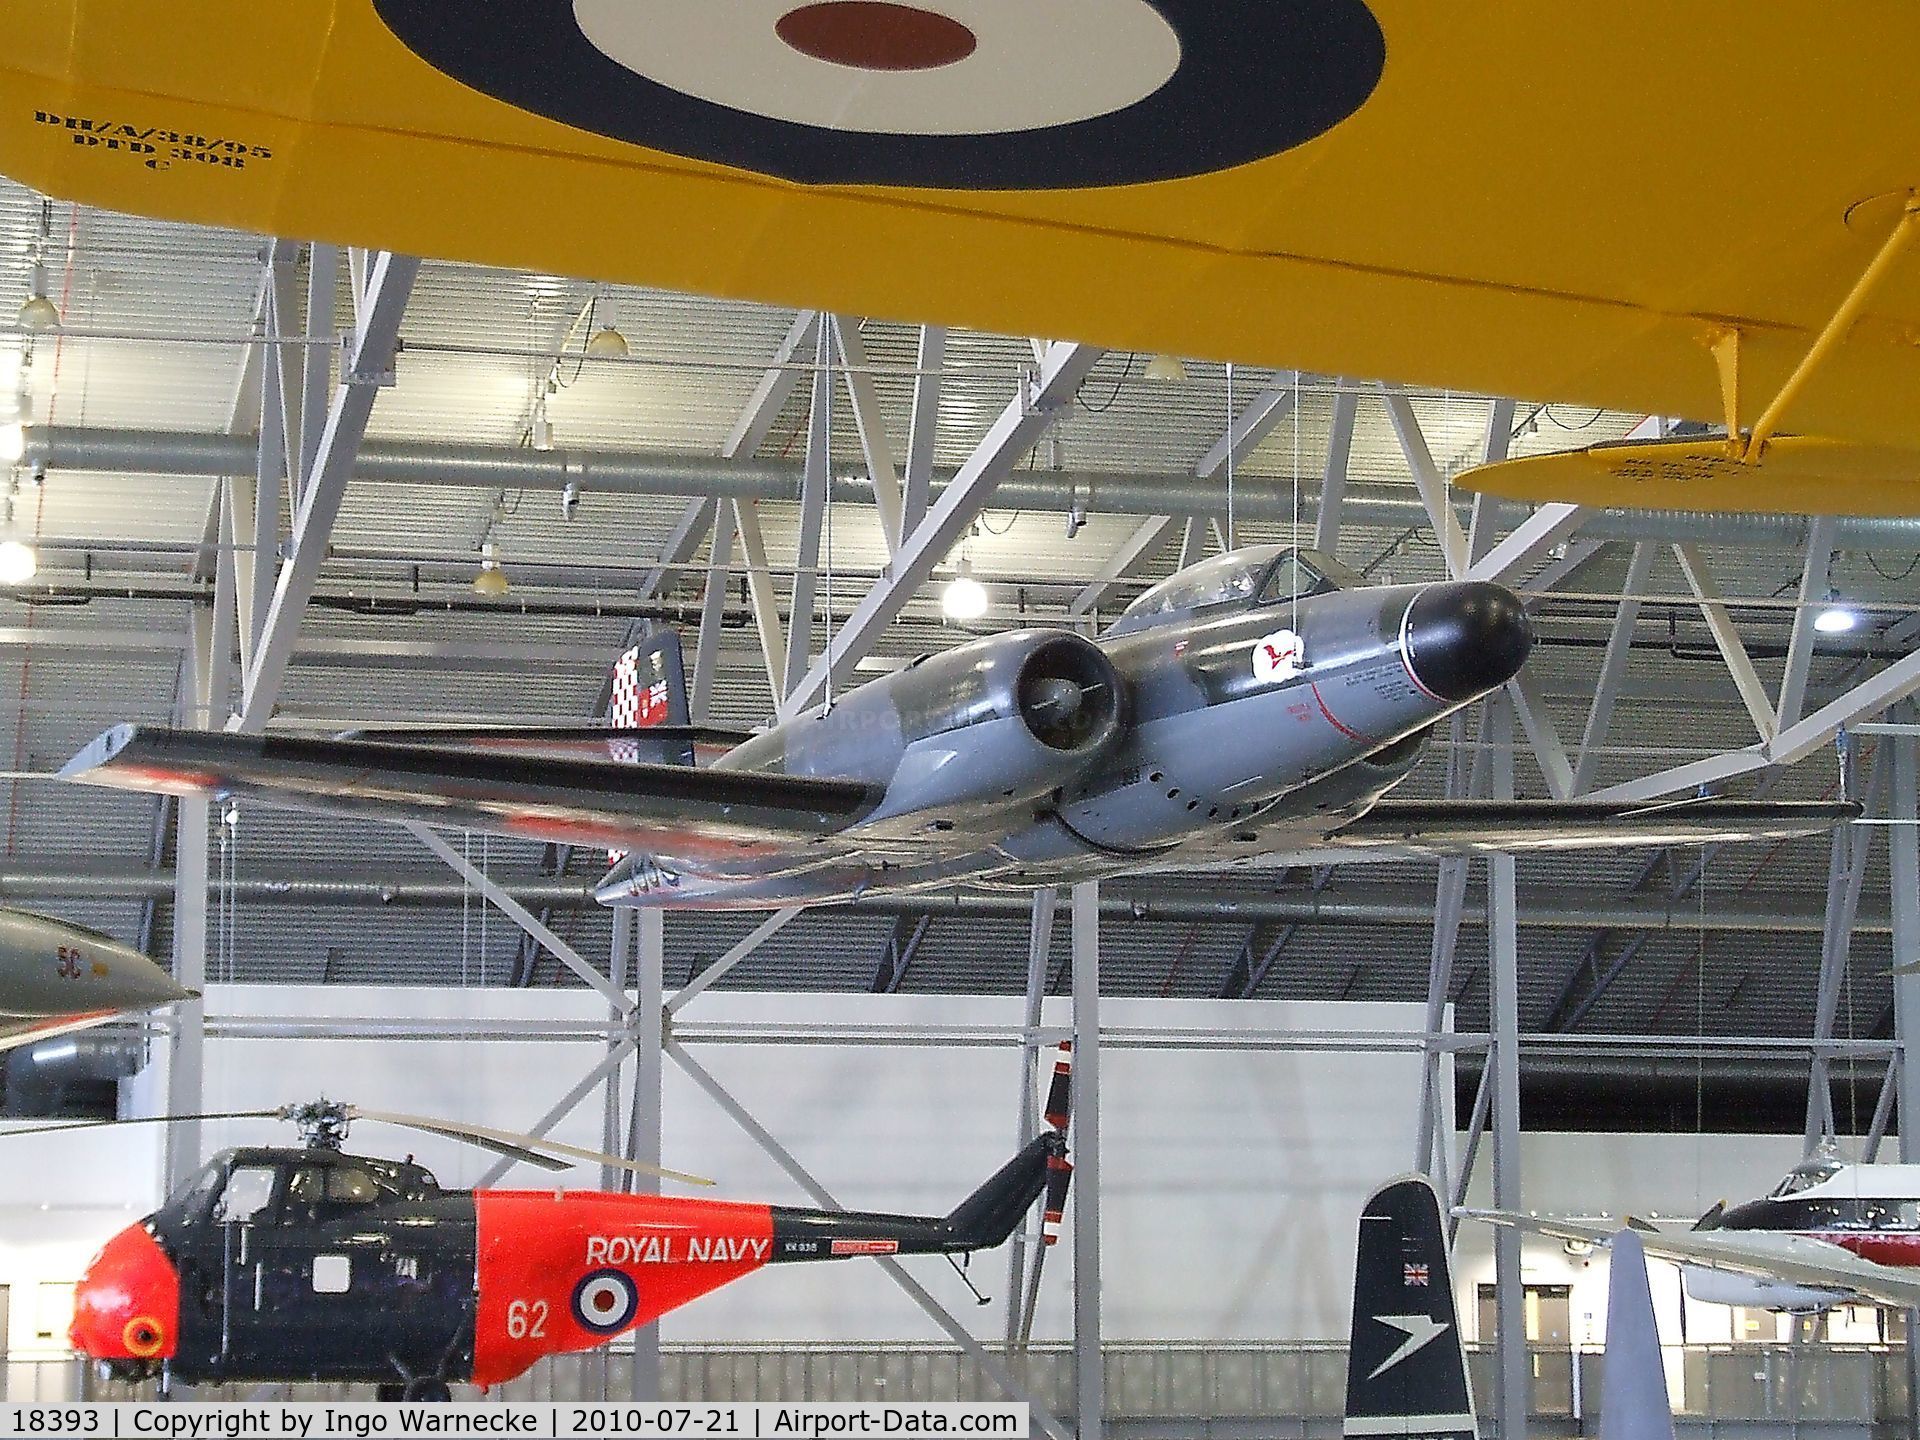 18393, Avro Canada CF-100 Mk.4B Canuck C/N 293, Avro Canada CF-100 Mk.4B Canuck at the Imperial War Museum, Duxford